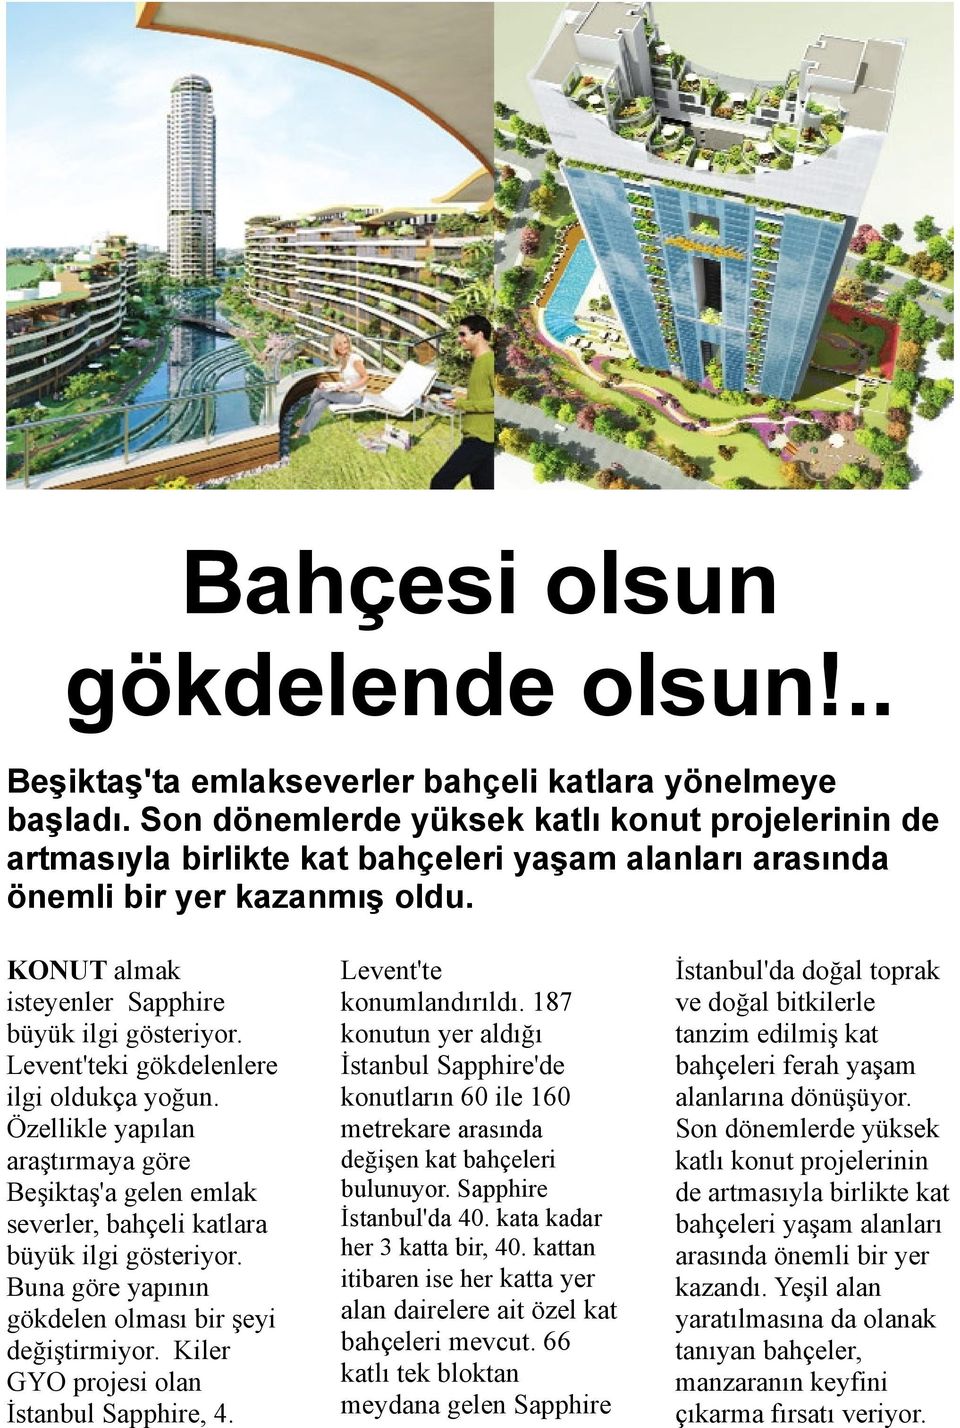 Levent'teki gökdelenlere ilgi oldukça yoğun. Özellikle yapılan araştırmaya göre Beşiktaş'a gelen emlak severler, bahçeli katlara büyük ilgi gösteriyor.